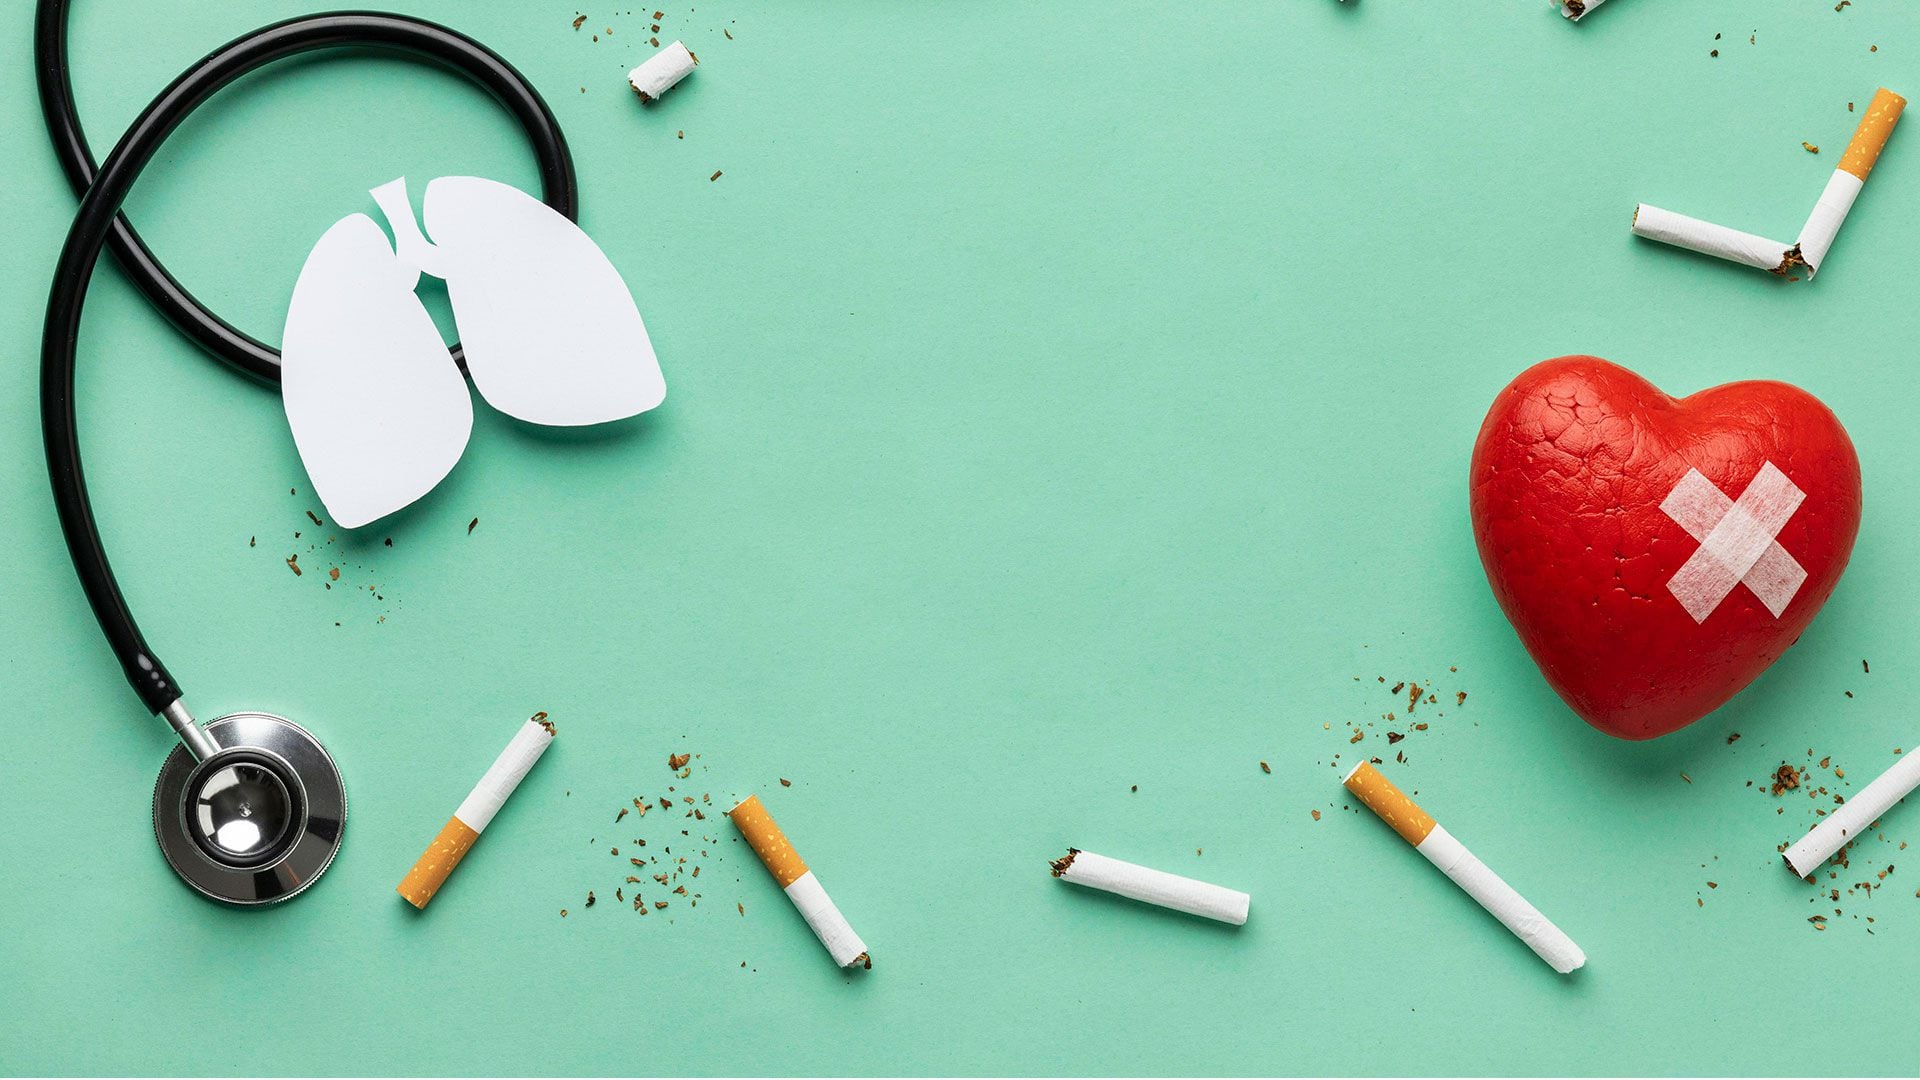 Un estudio científico publicado en BMJ demostró que los alimentos ultraprocesados pueden ser tan adictivos como fumar tabaco o consumir alcohol (Freepik)